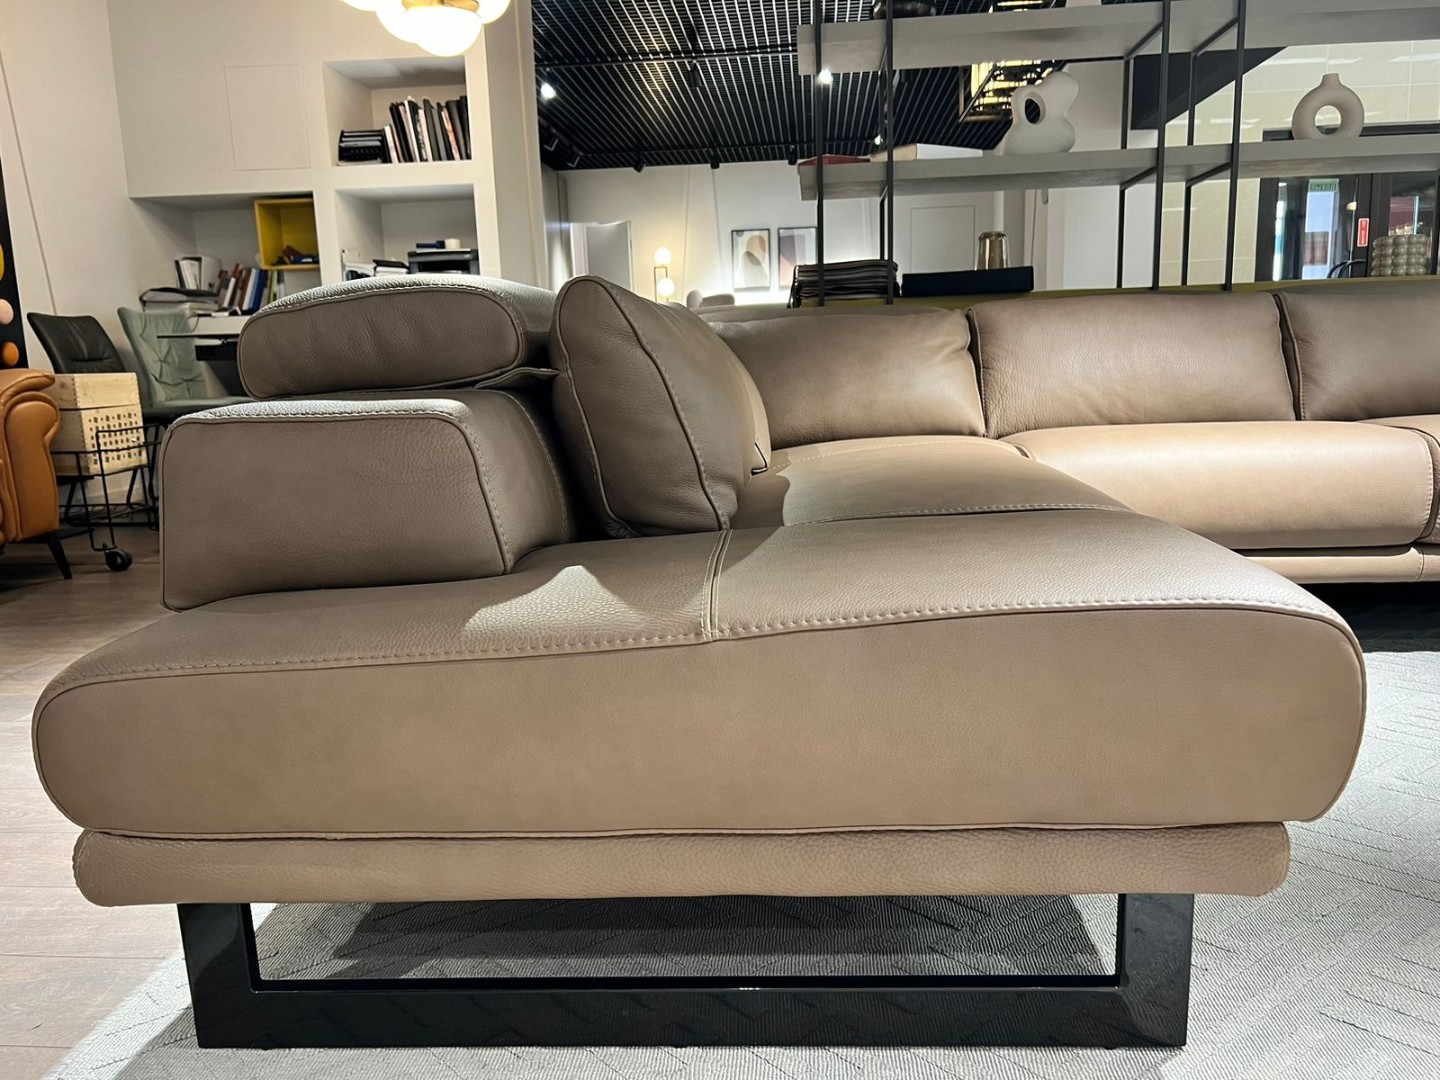 Угловой диван JERSEY в коже с регулируемыми подголовниками — ₽, купить у официального дилера Nicolettihome